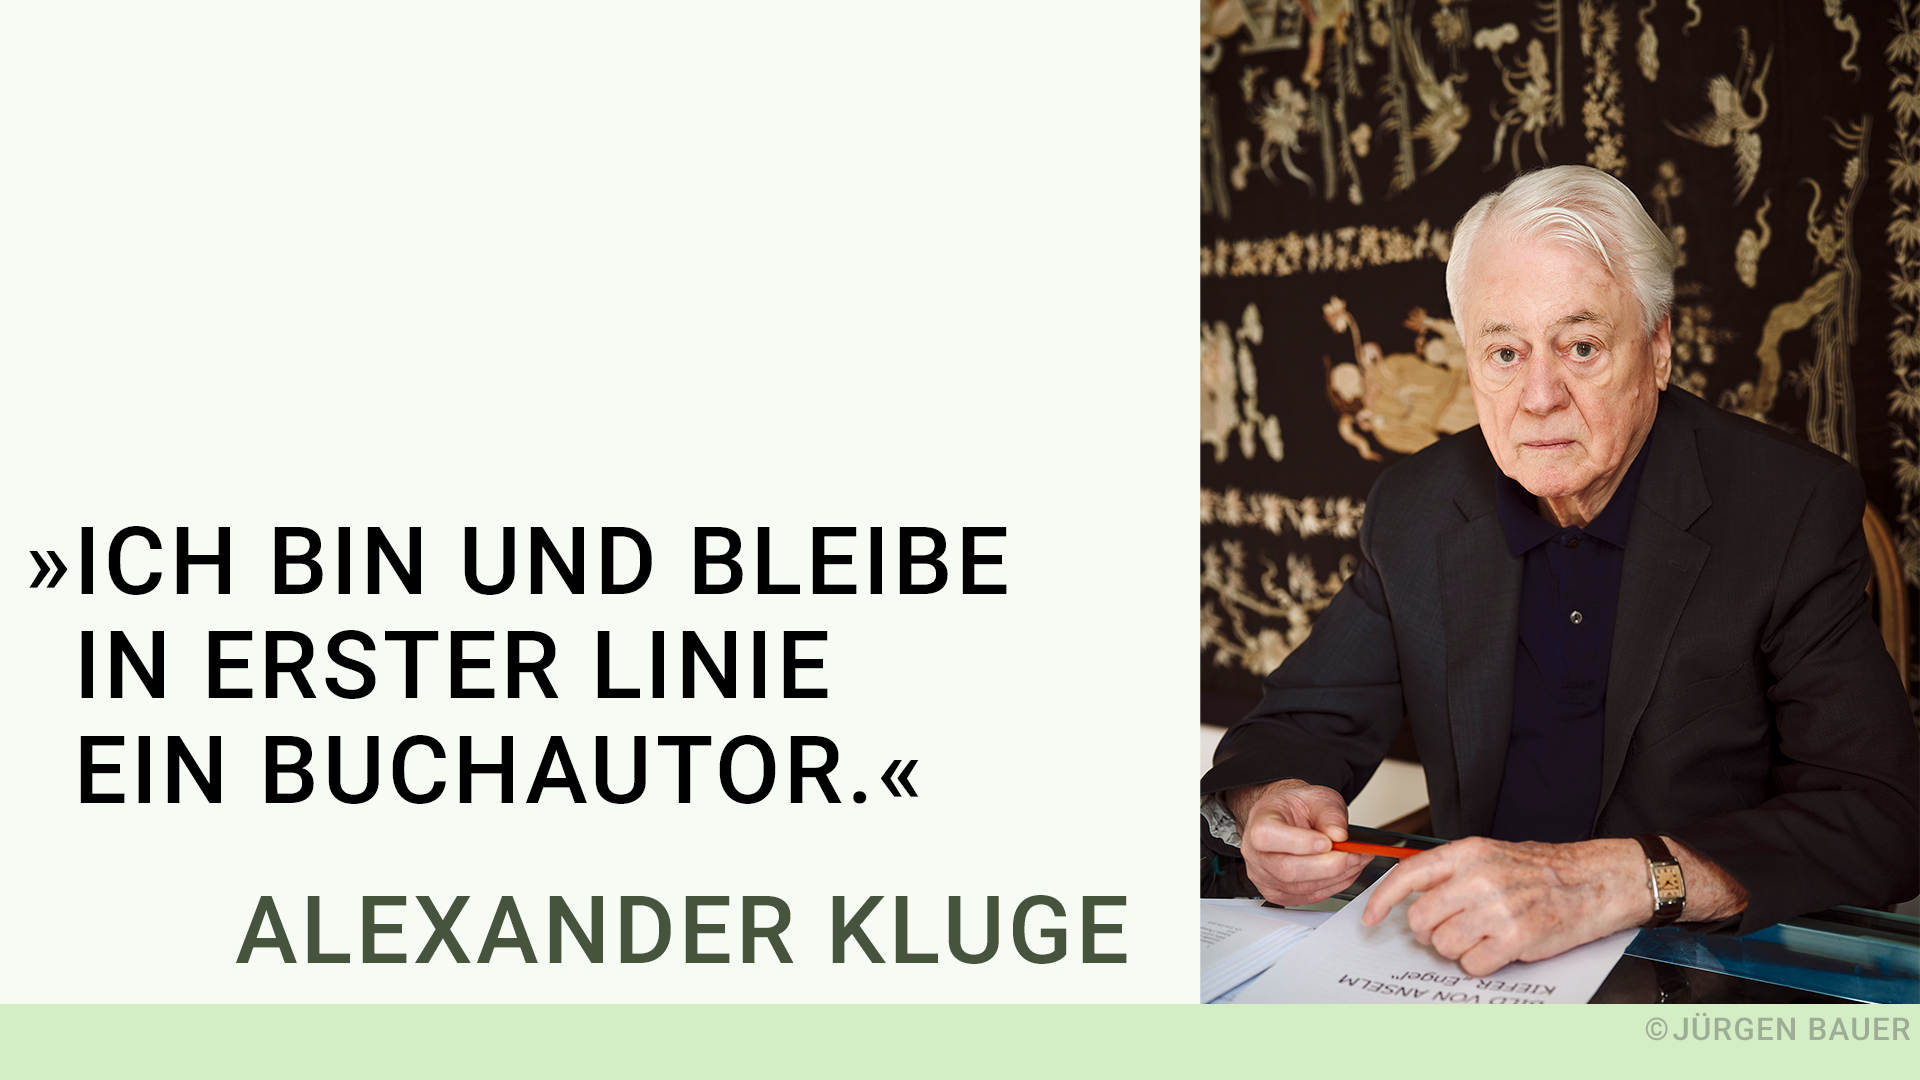 Zum 90. Geburtstag von Alexander Kluge